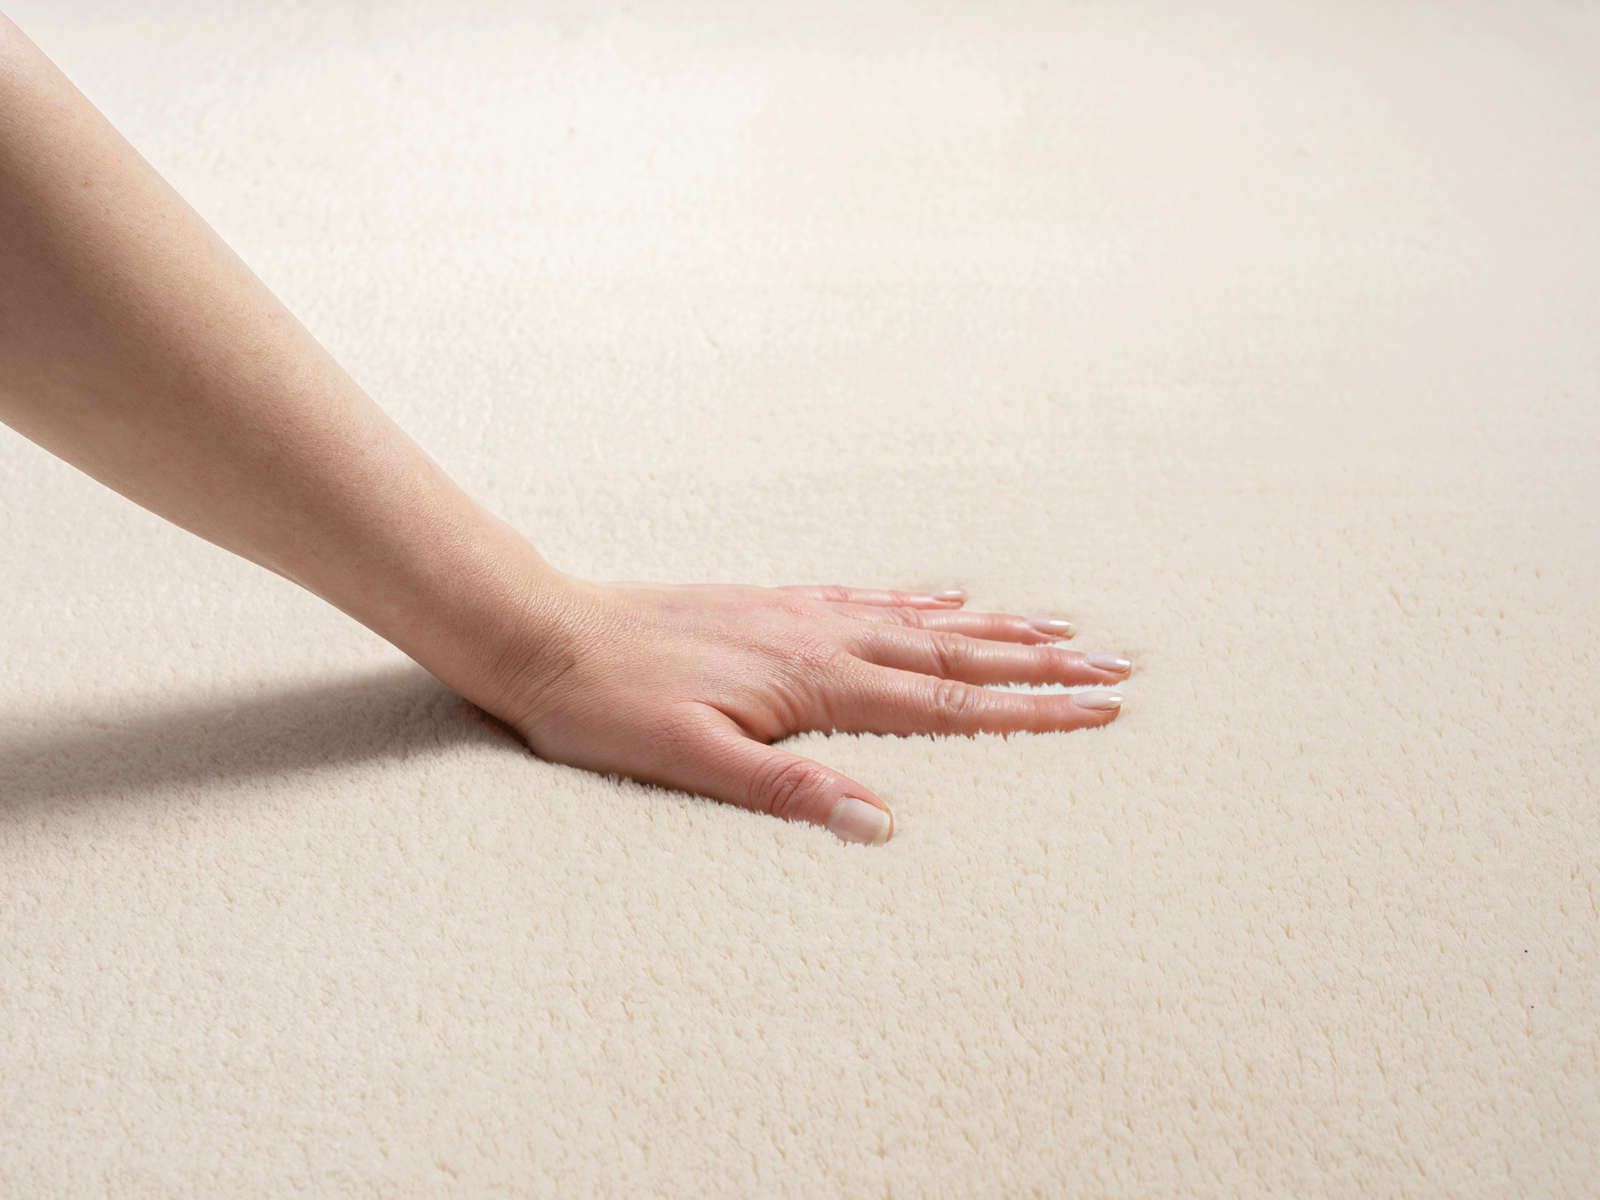             Soft high pile carpet in beige - 290 x 200 cm
        